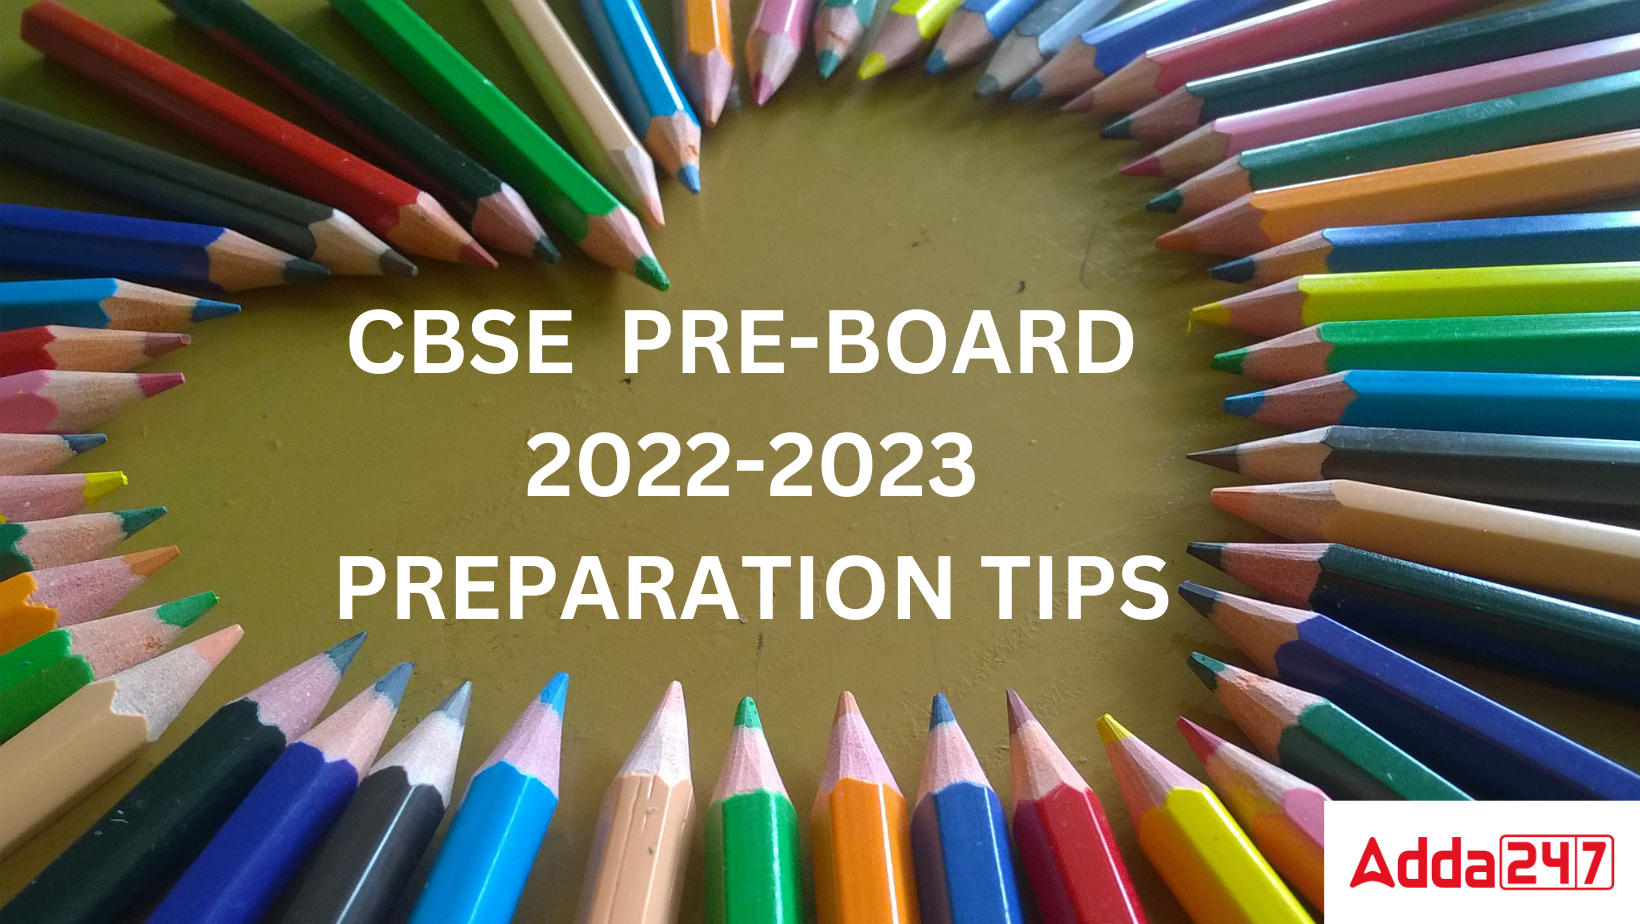 CBSE PRE-BOARD 2022-2023 PREPARATION TIPS